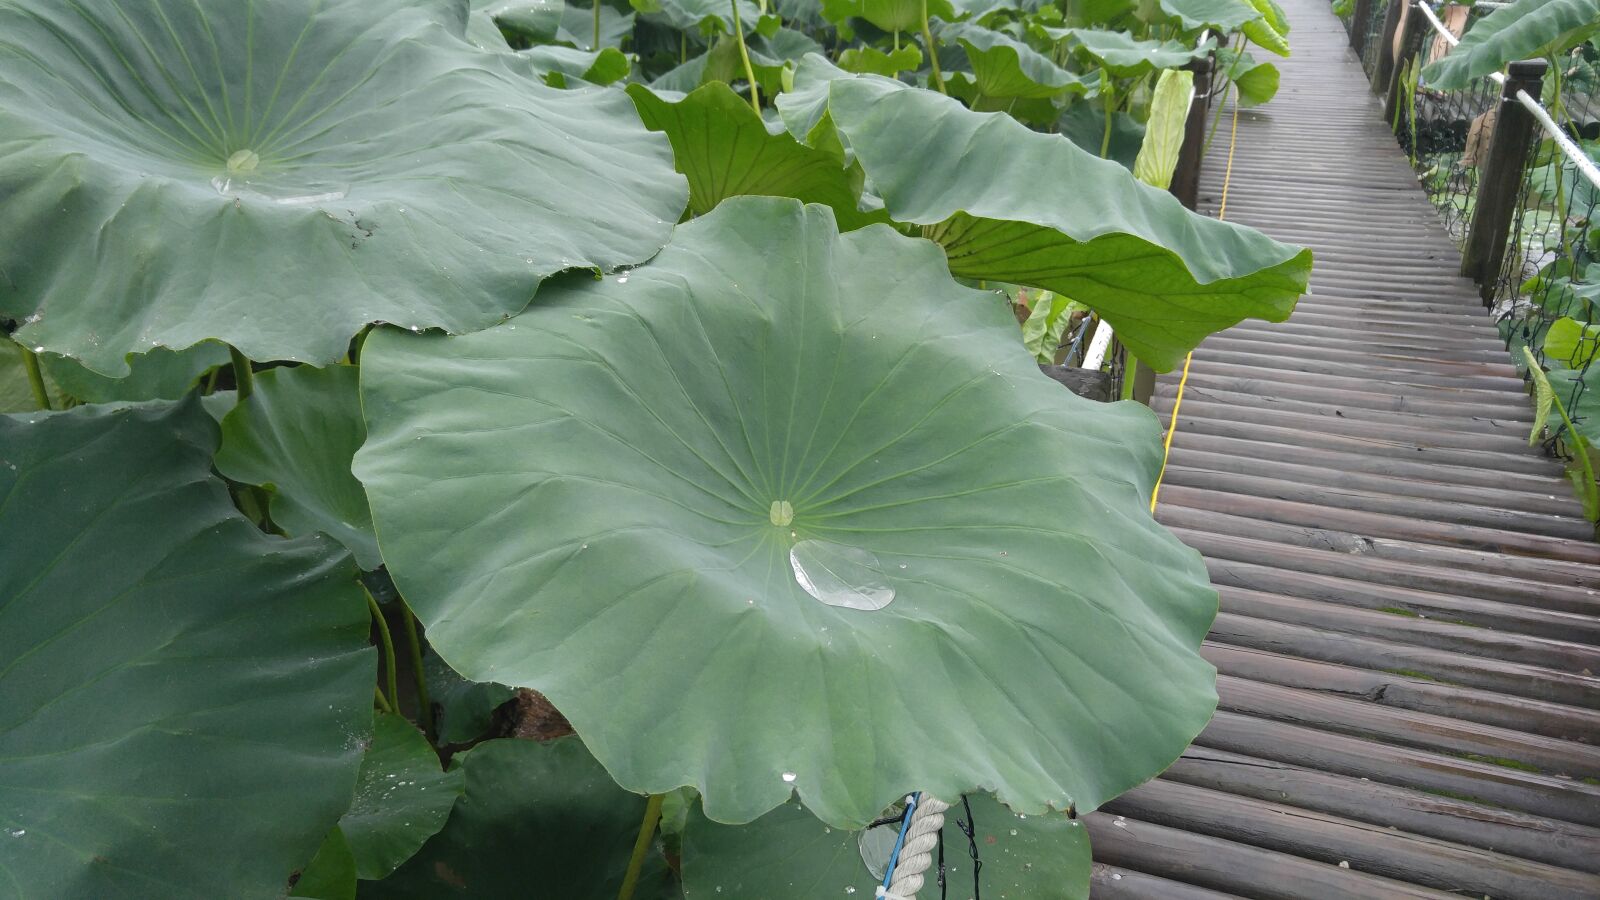 LG V10 sample photo. Lotus leaf, trickle, plants photography